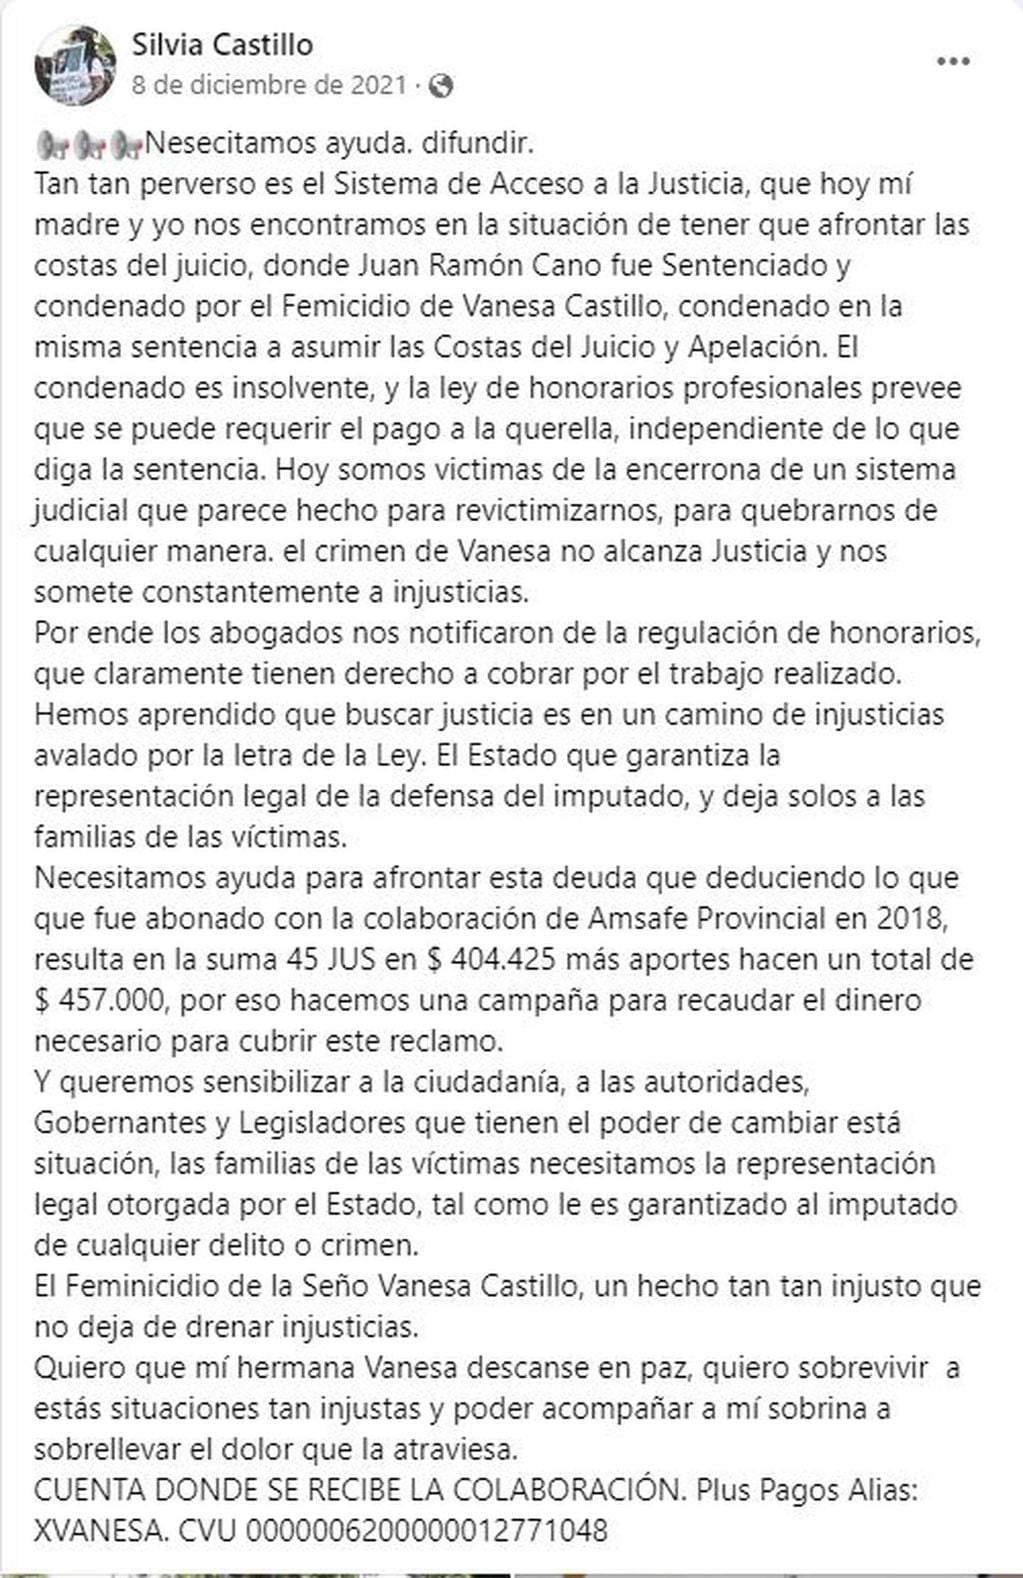 El posteo de Silvia Castillo, la hermana de Vanesa, donde pide colaboración a los ciudadanos para poder pagar el juicio.